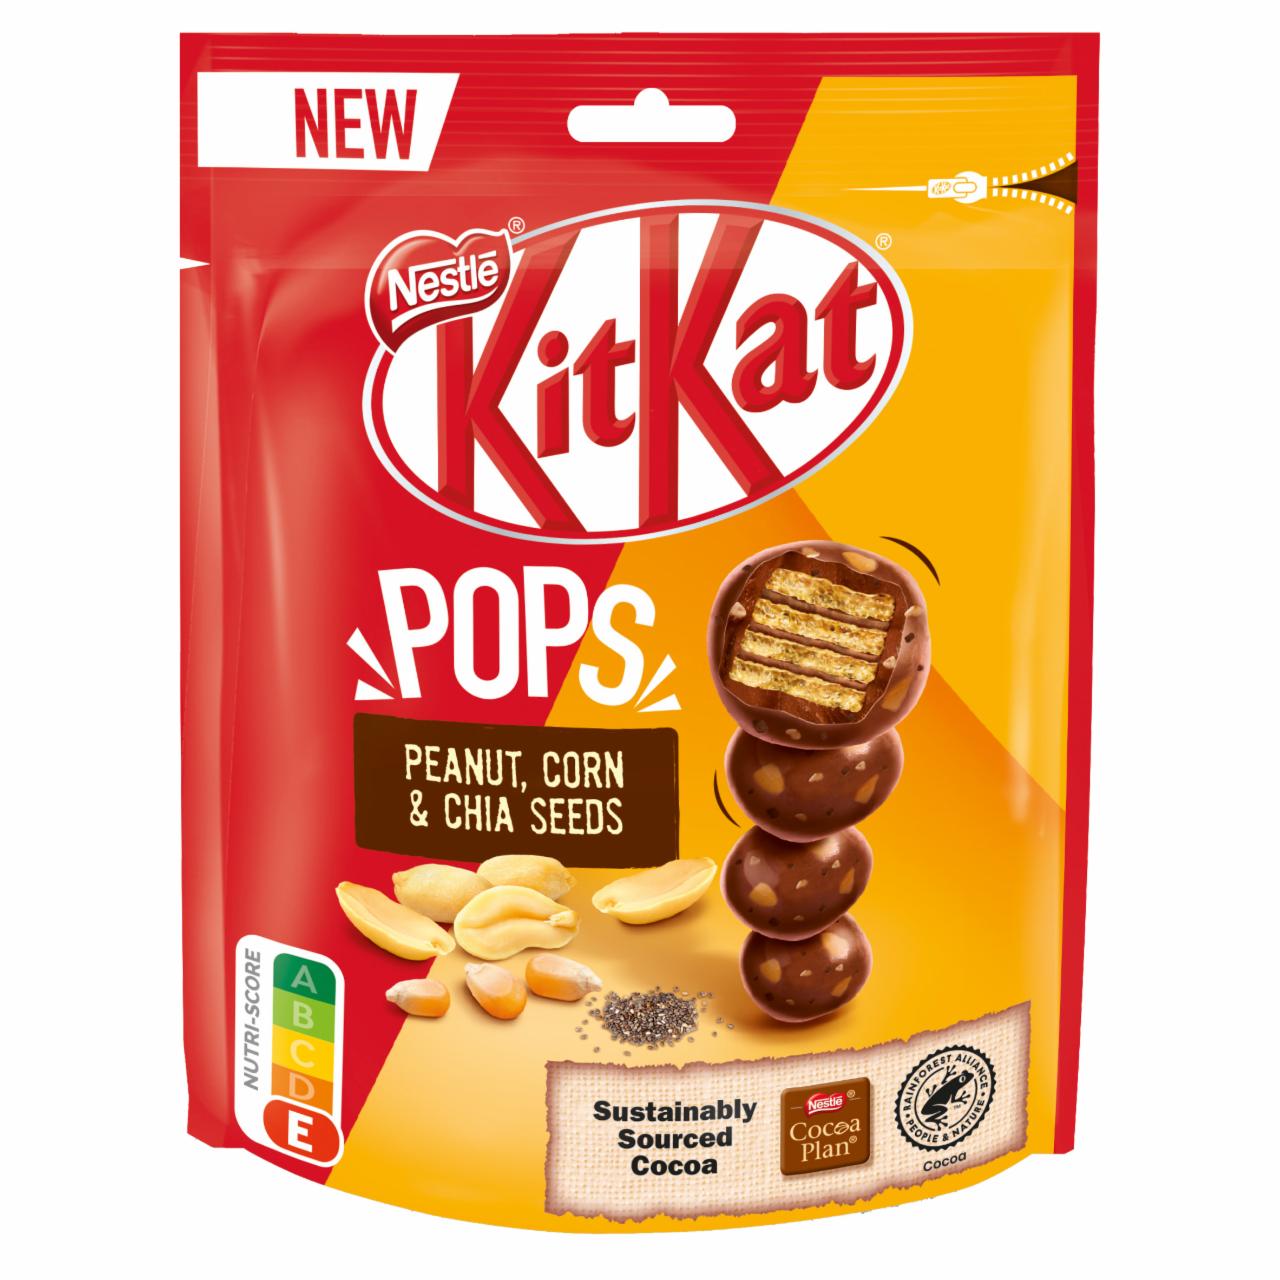 Képek - KitKat Pops ropogós ostya tejcsokoládéban, földimogyorópasztával, kukoricával és chia maggal 110 g